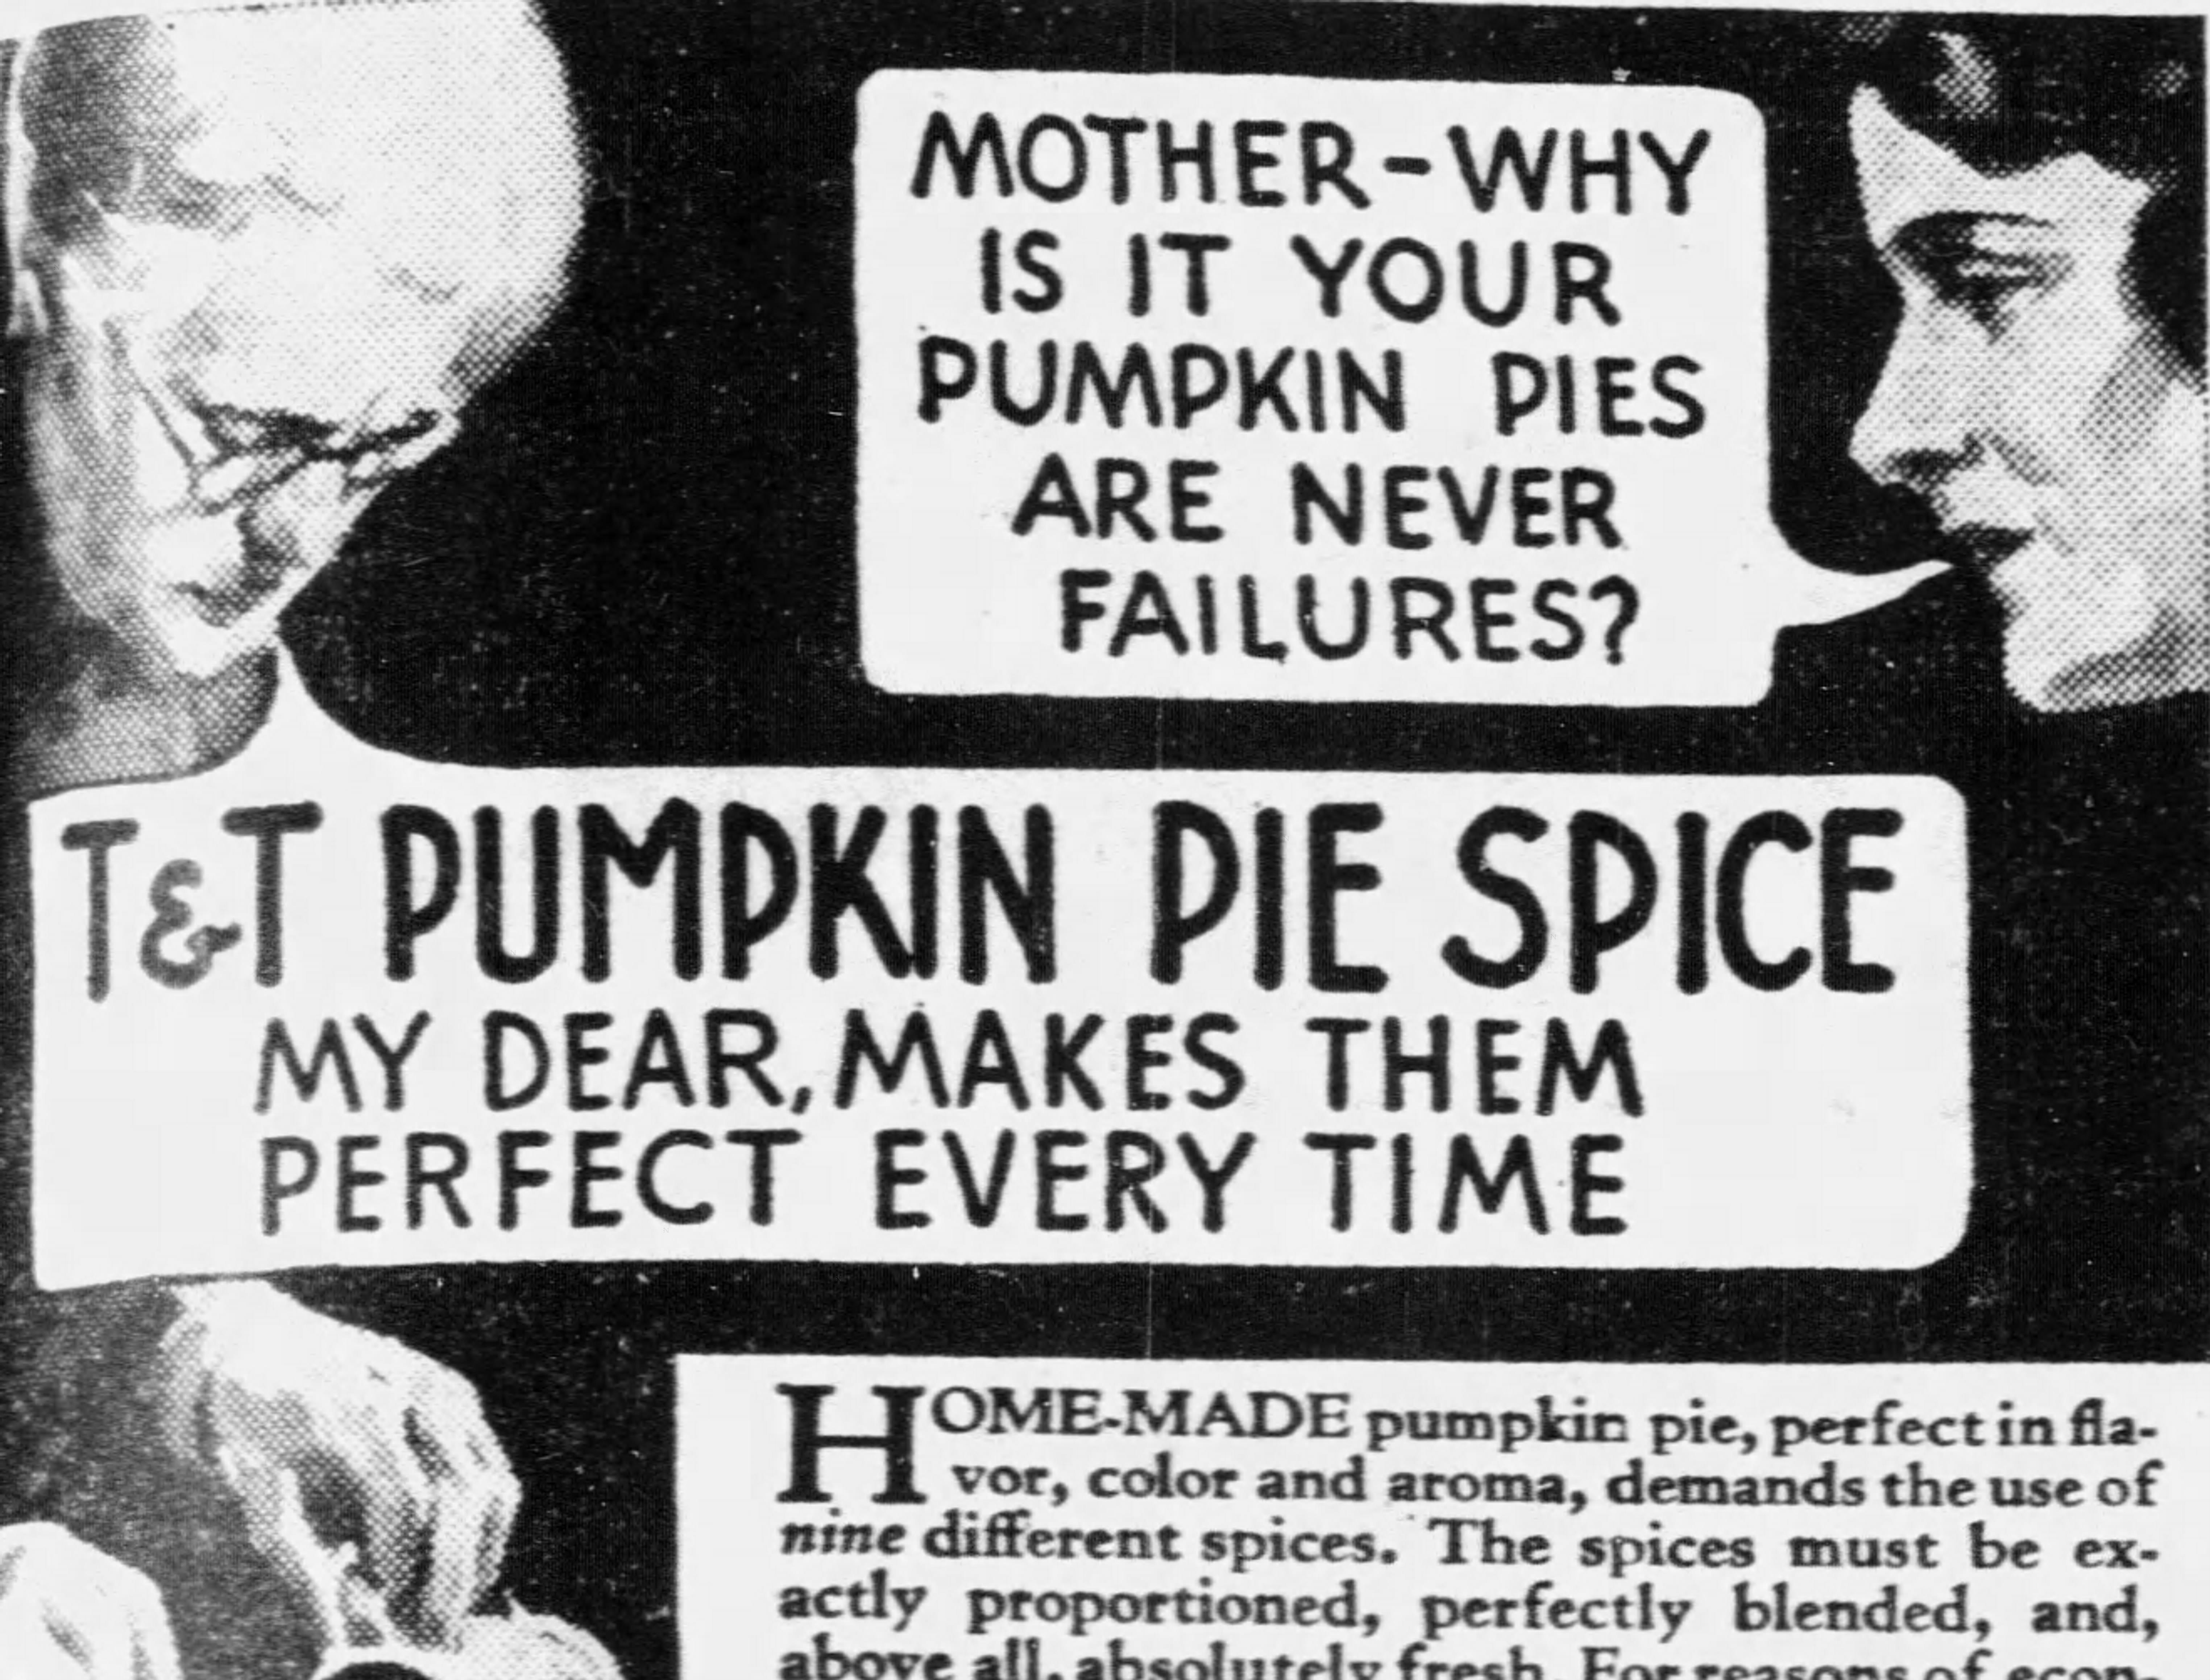 1933 ad for T&T Pumpkin Pie Spice (St. Louis Post-Dispatch, 10.20.1933)